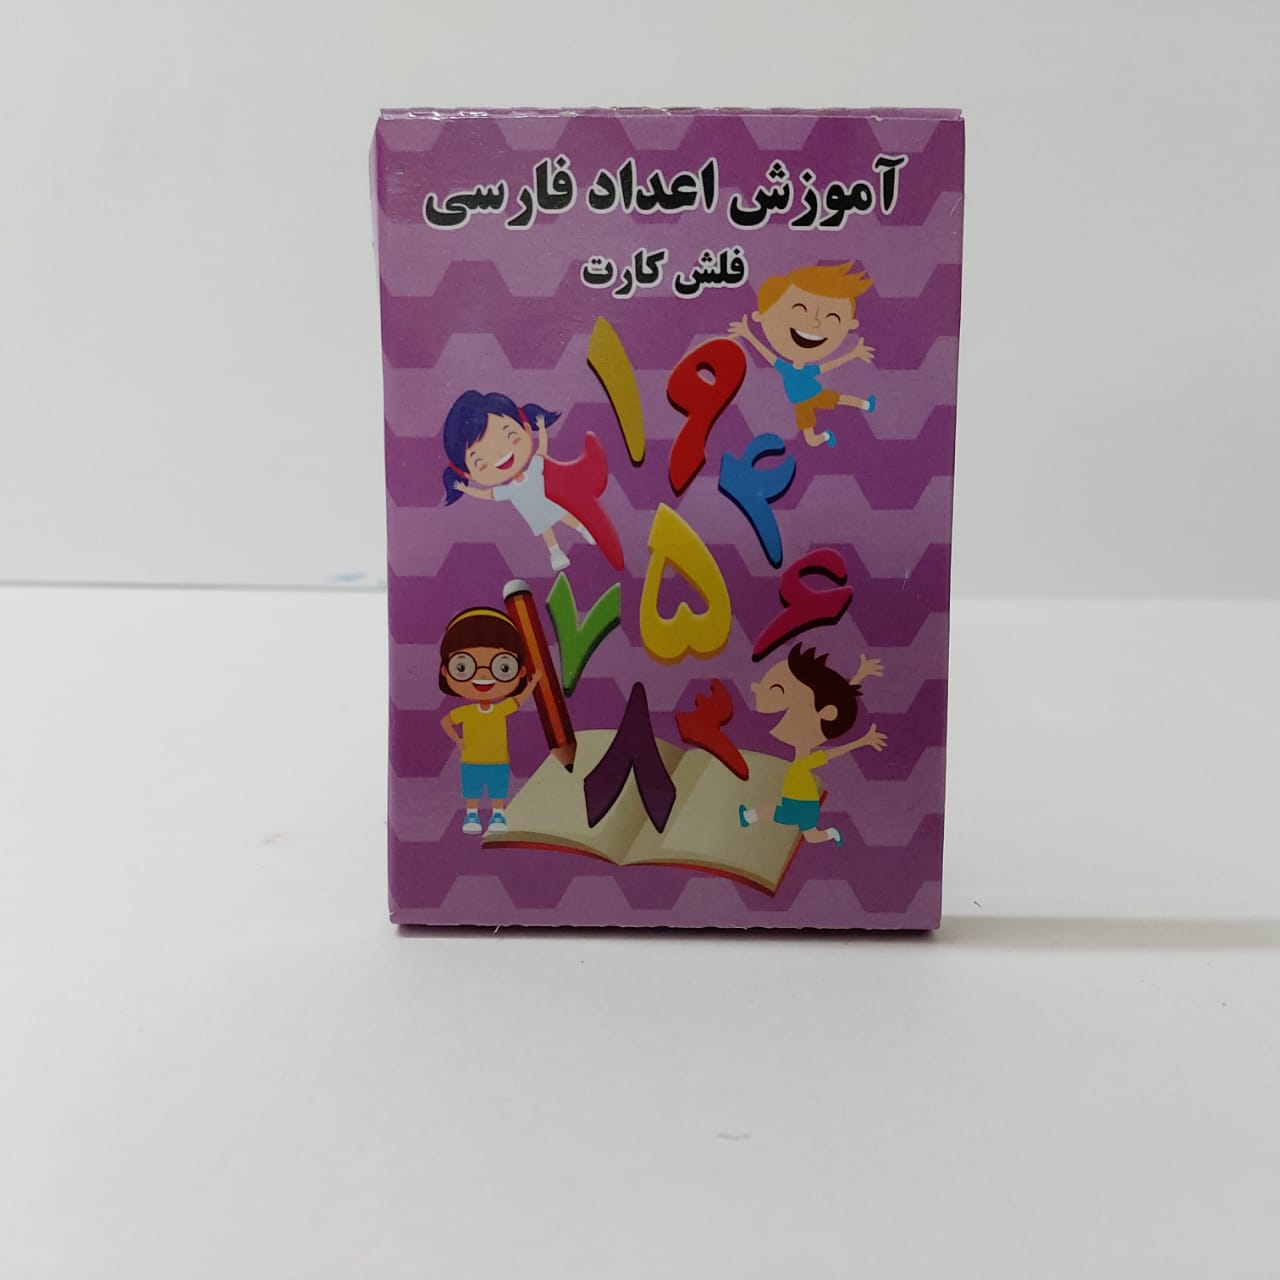 فلش کارت آموزش اعداد فارسی  کد 61020